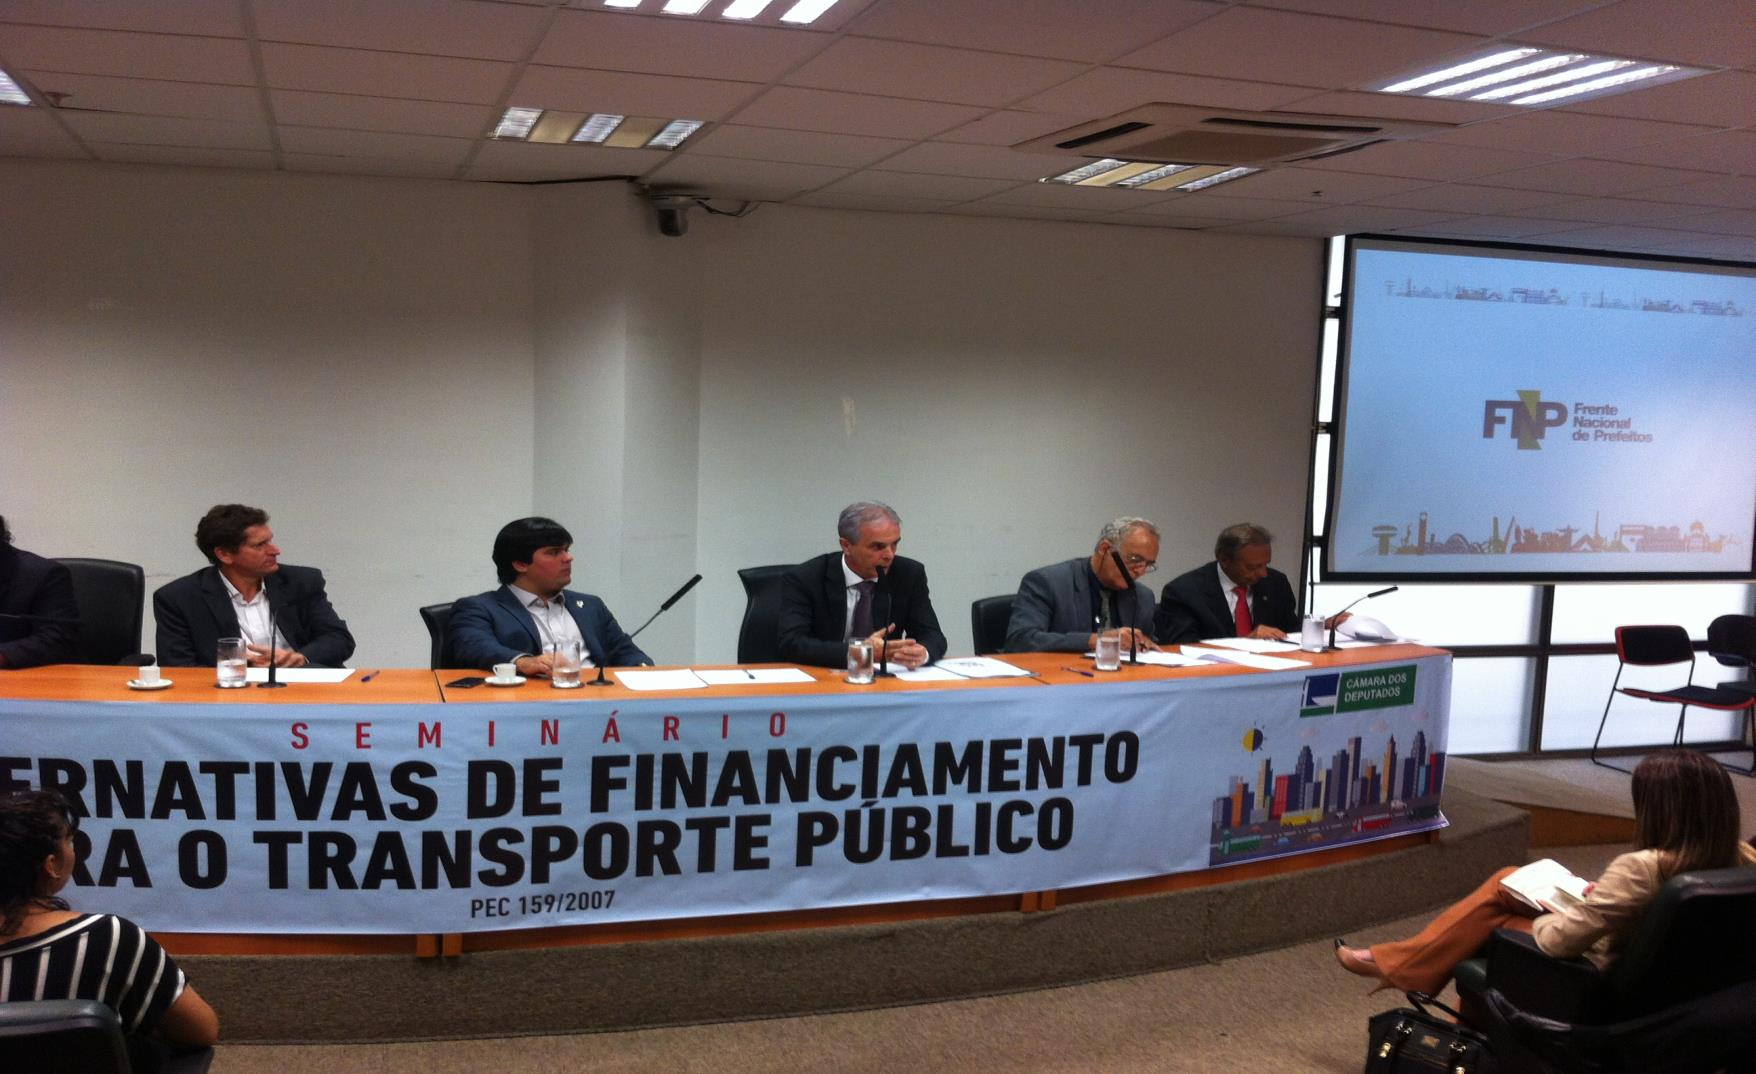 21 de março Seminário em São Paulo/SP para debater a destinação dos recursos da CIDE (PEC 159/2007 e apensadas)